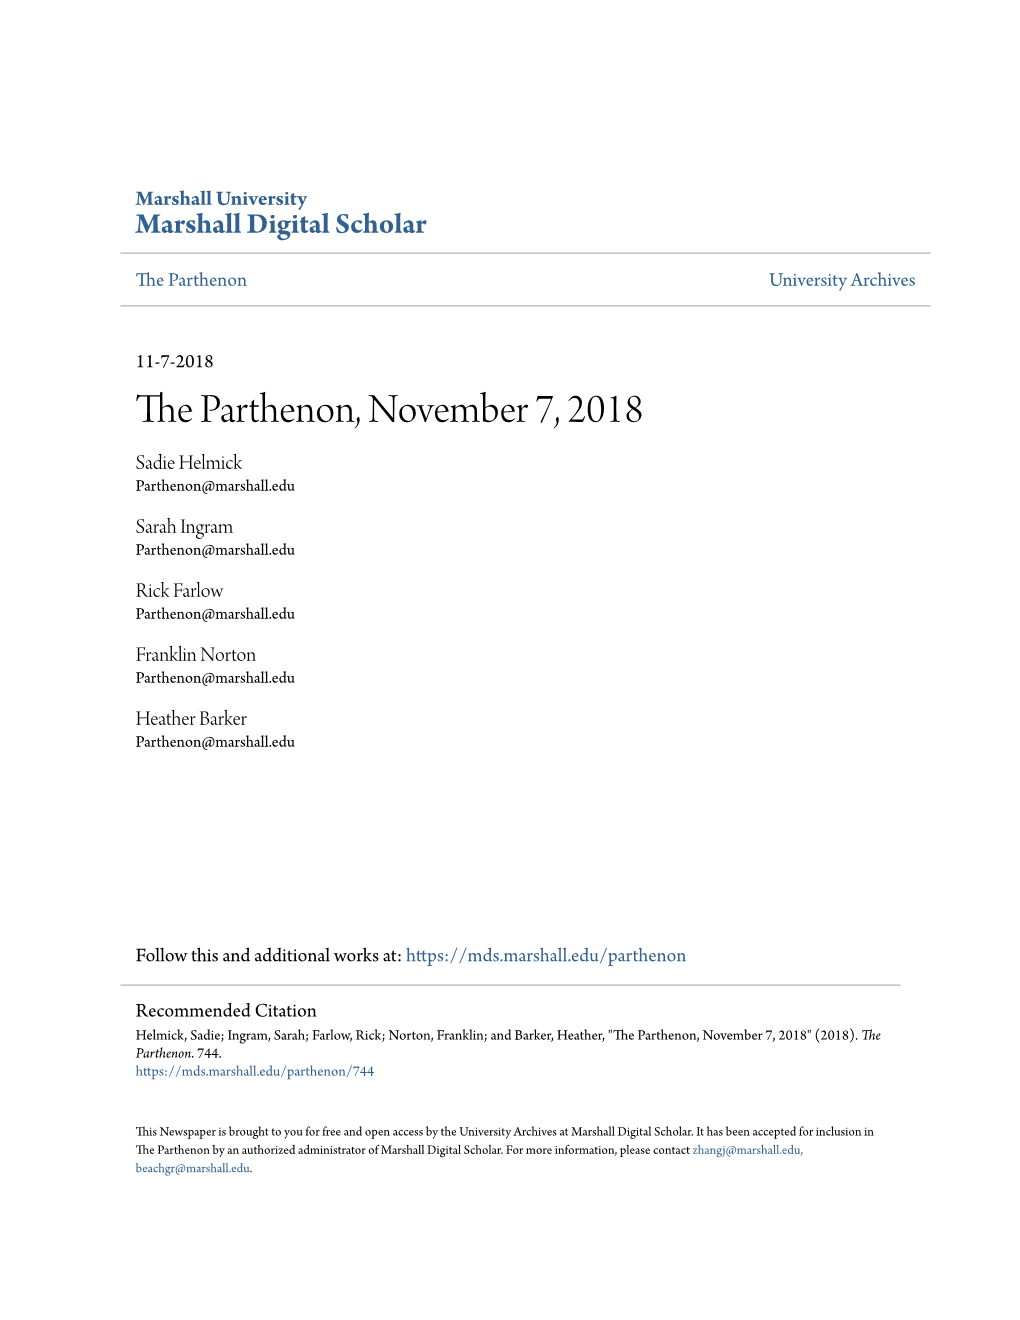 The Parthenon, November 7, 2018